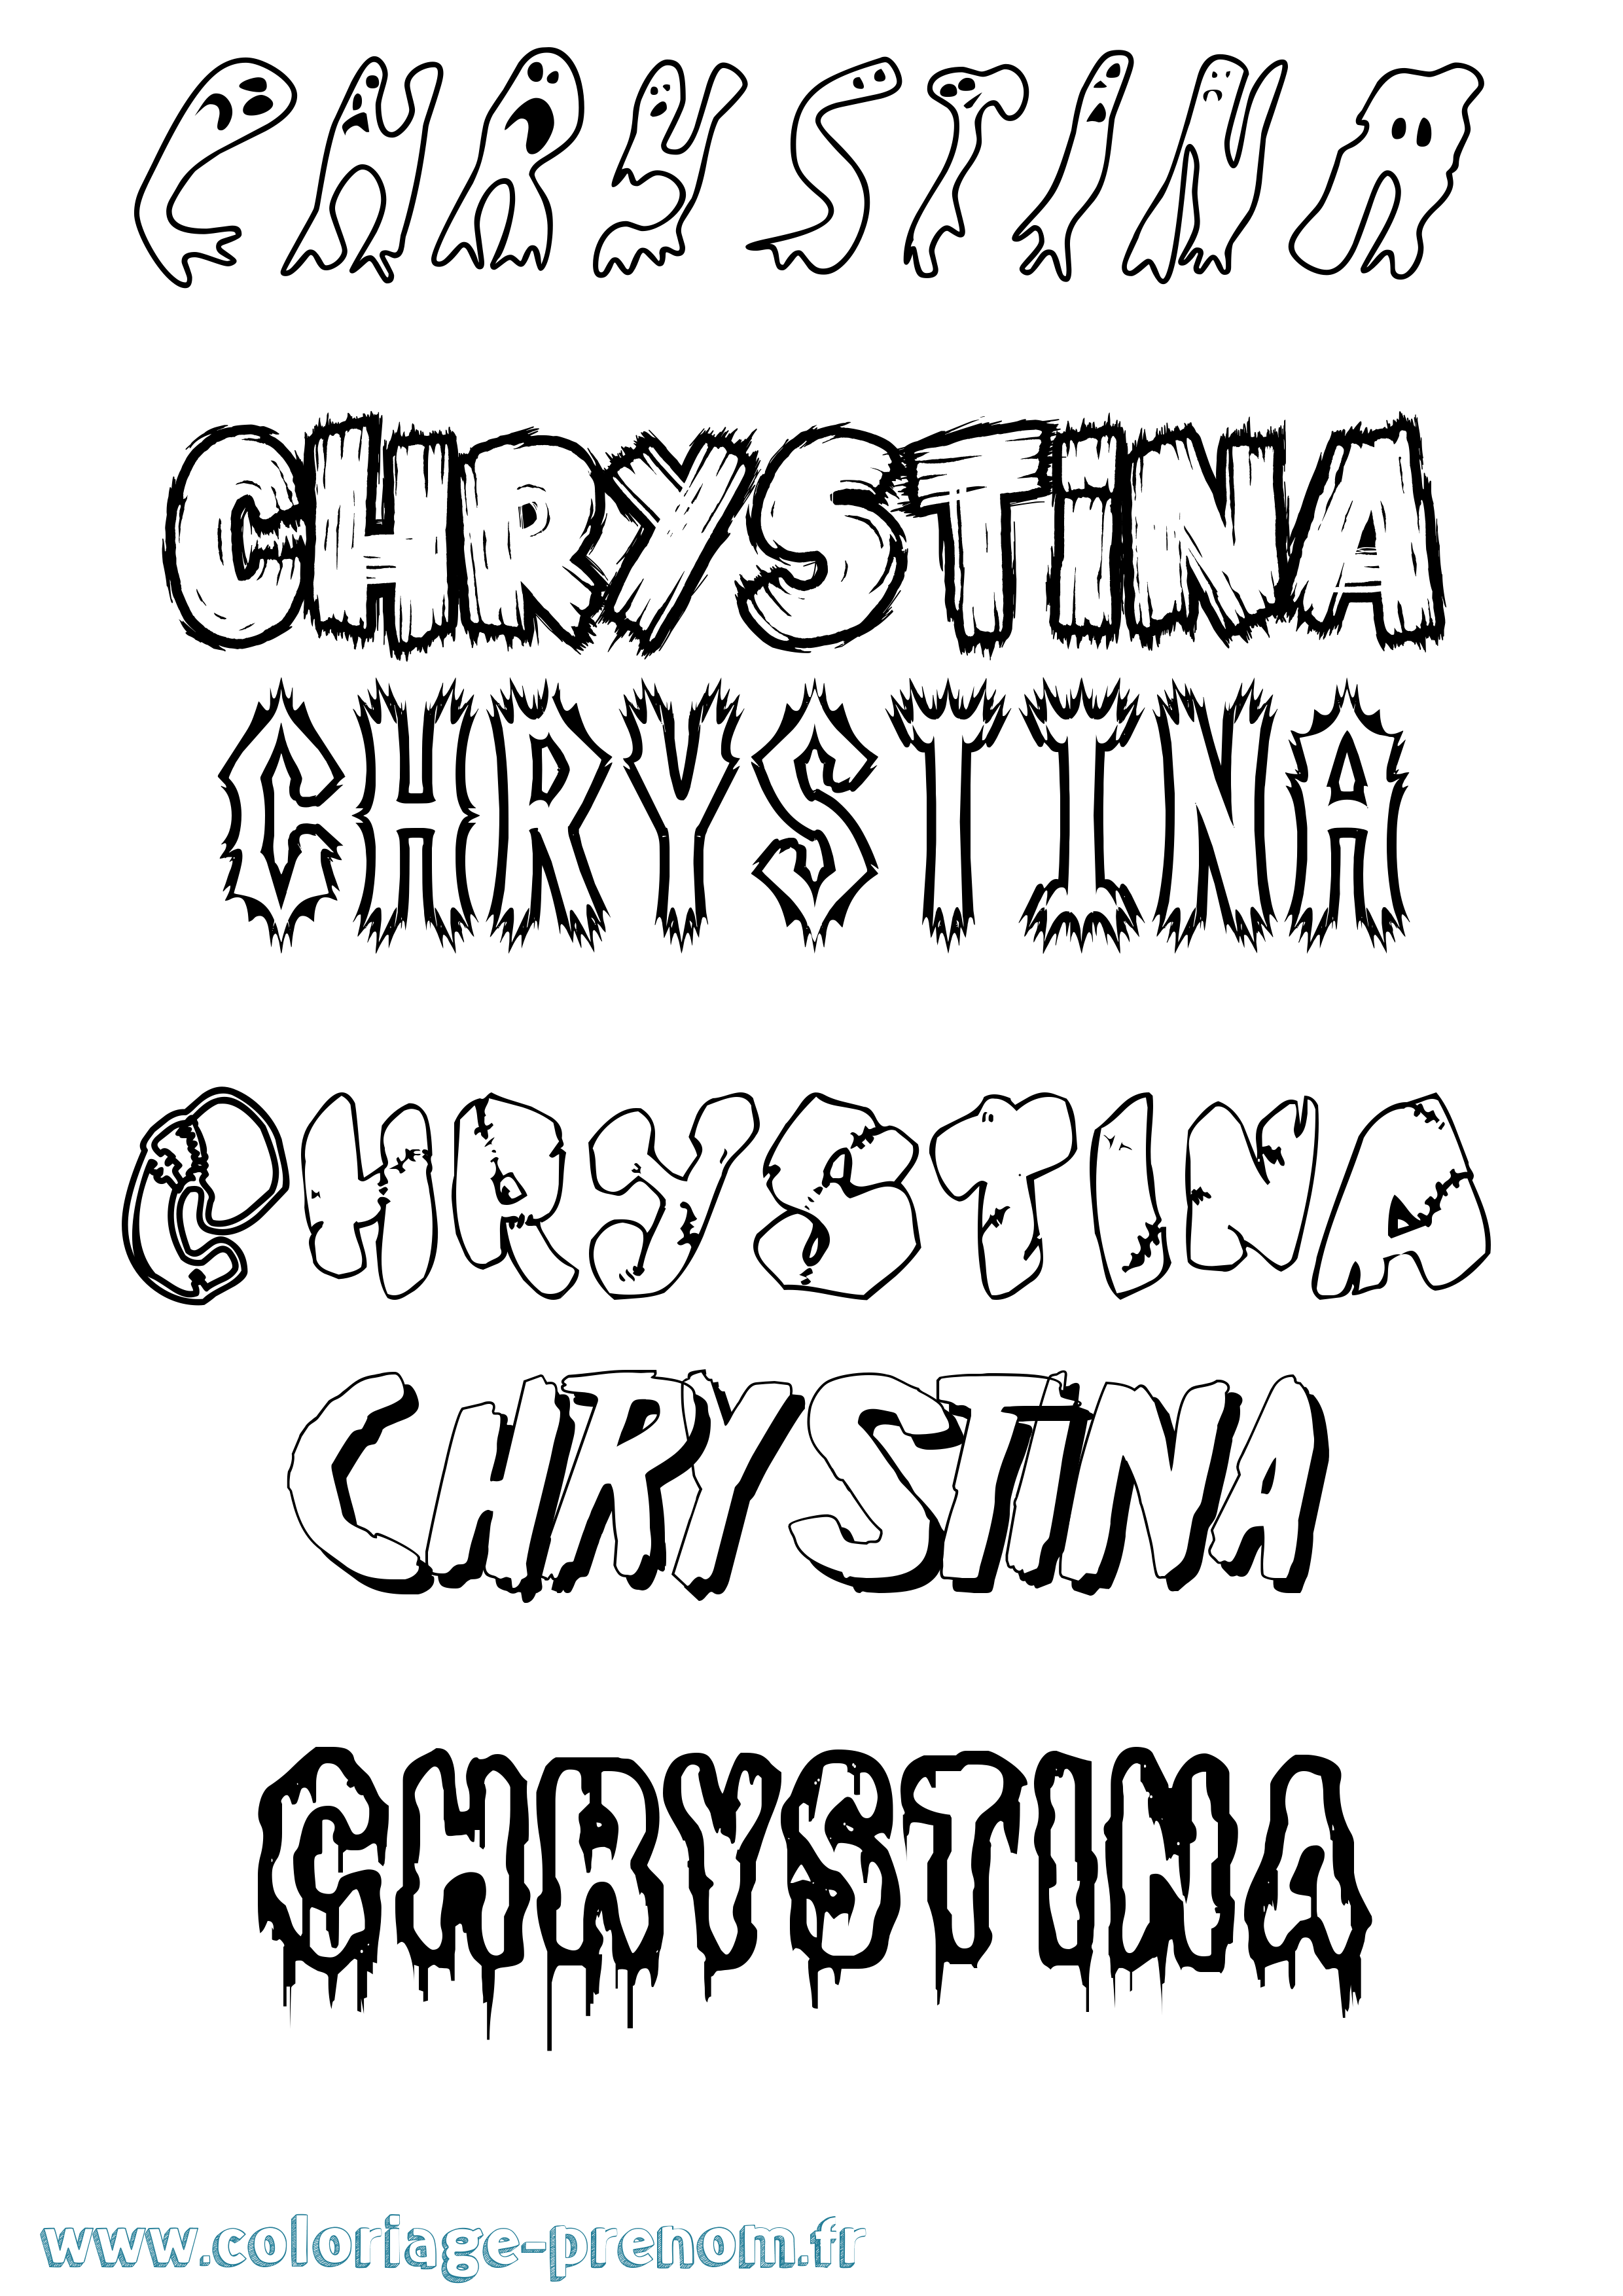 Coloriage prénom Chrystina Frisson